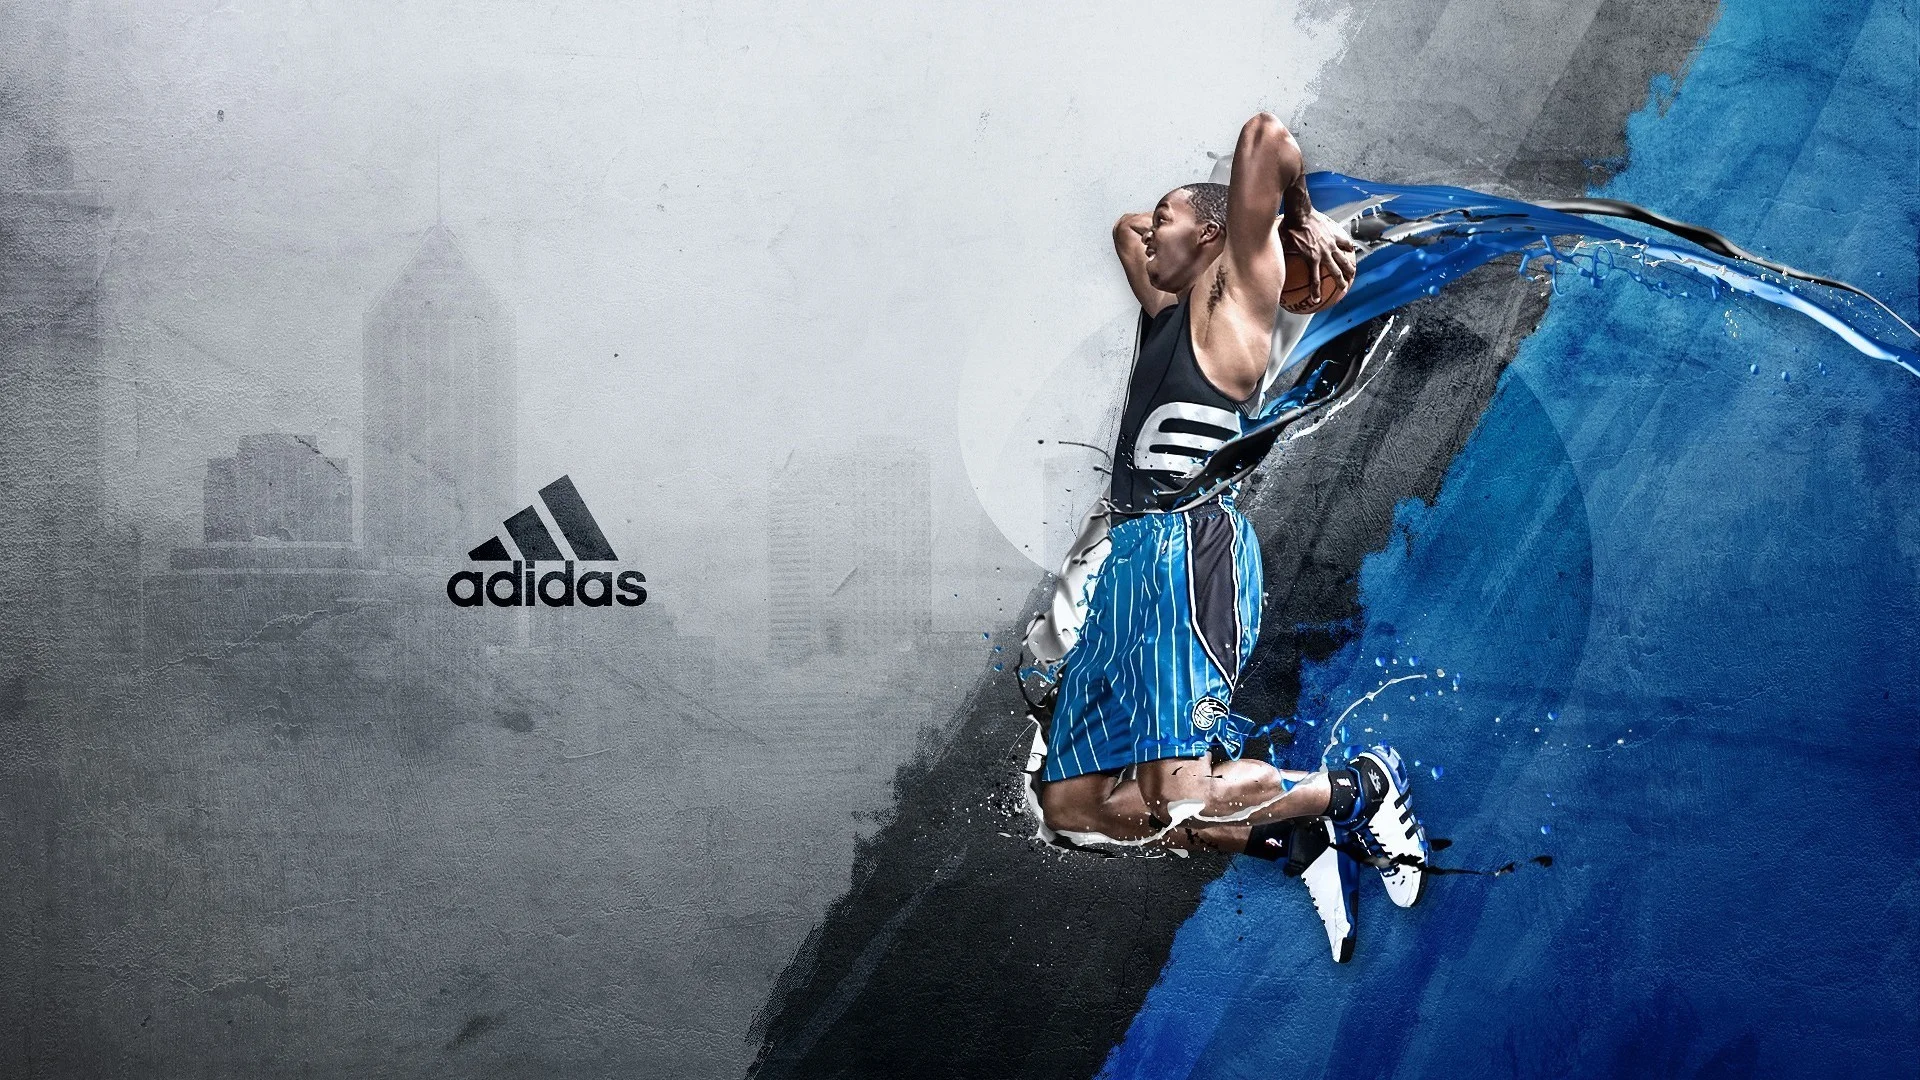 Adidas Basketball hd Widescreen Wallpaper hight definition Widescreen images